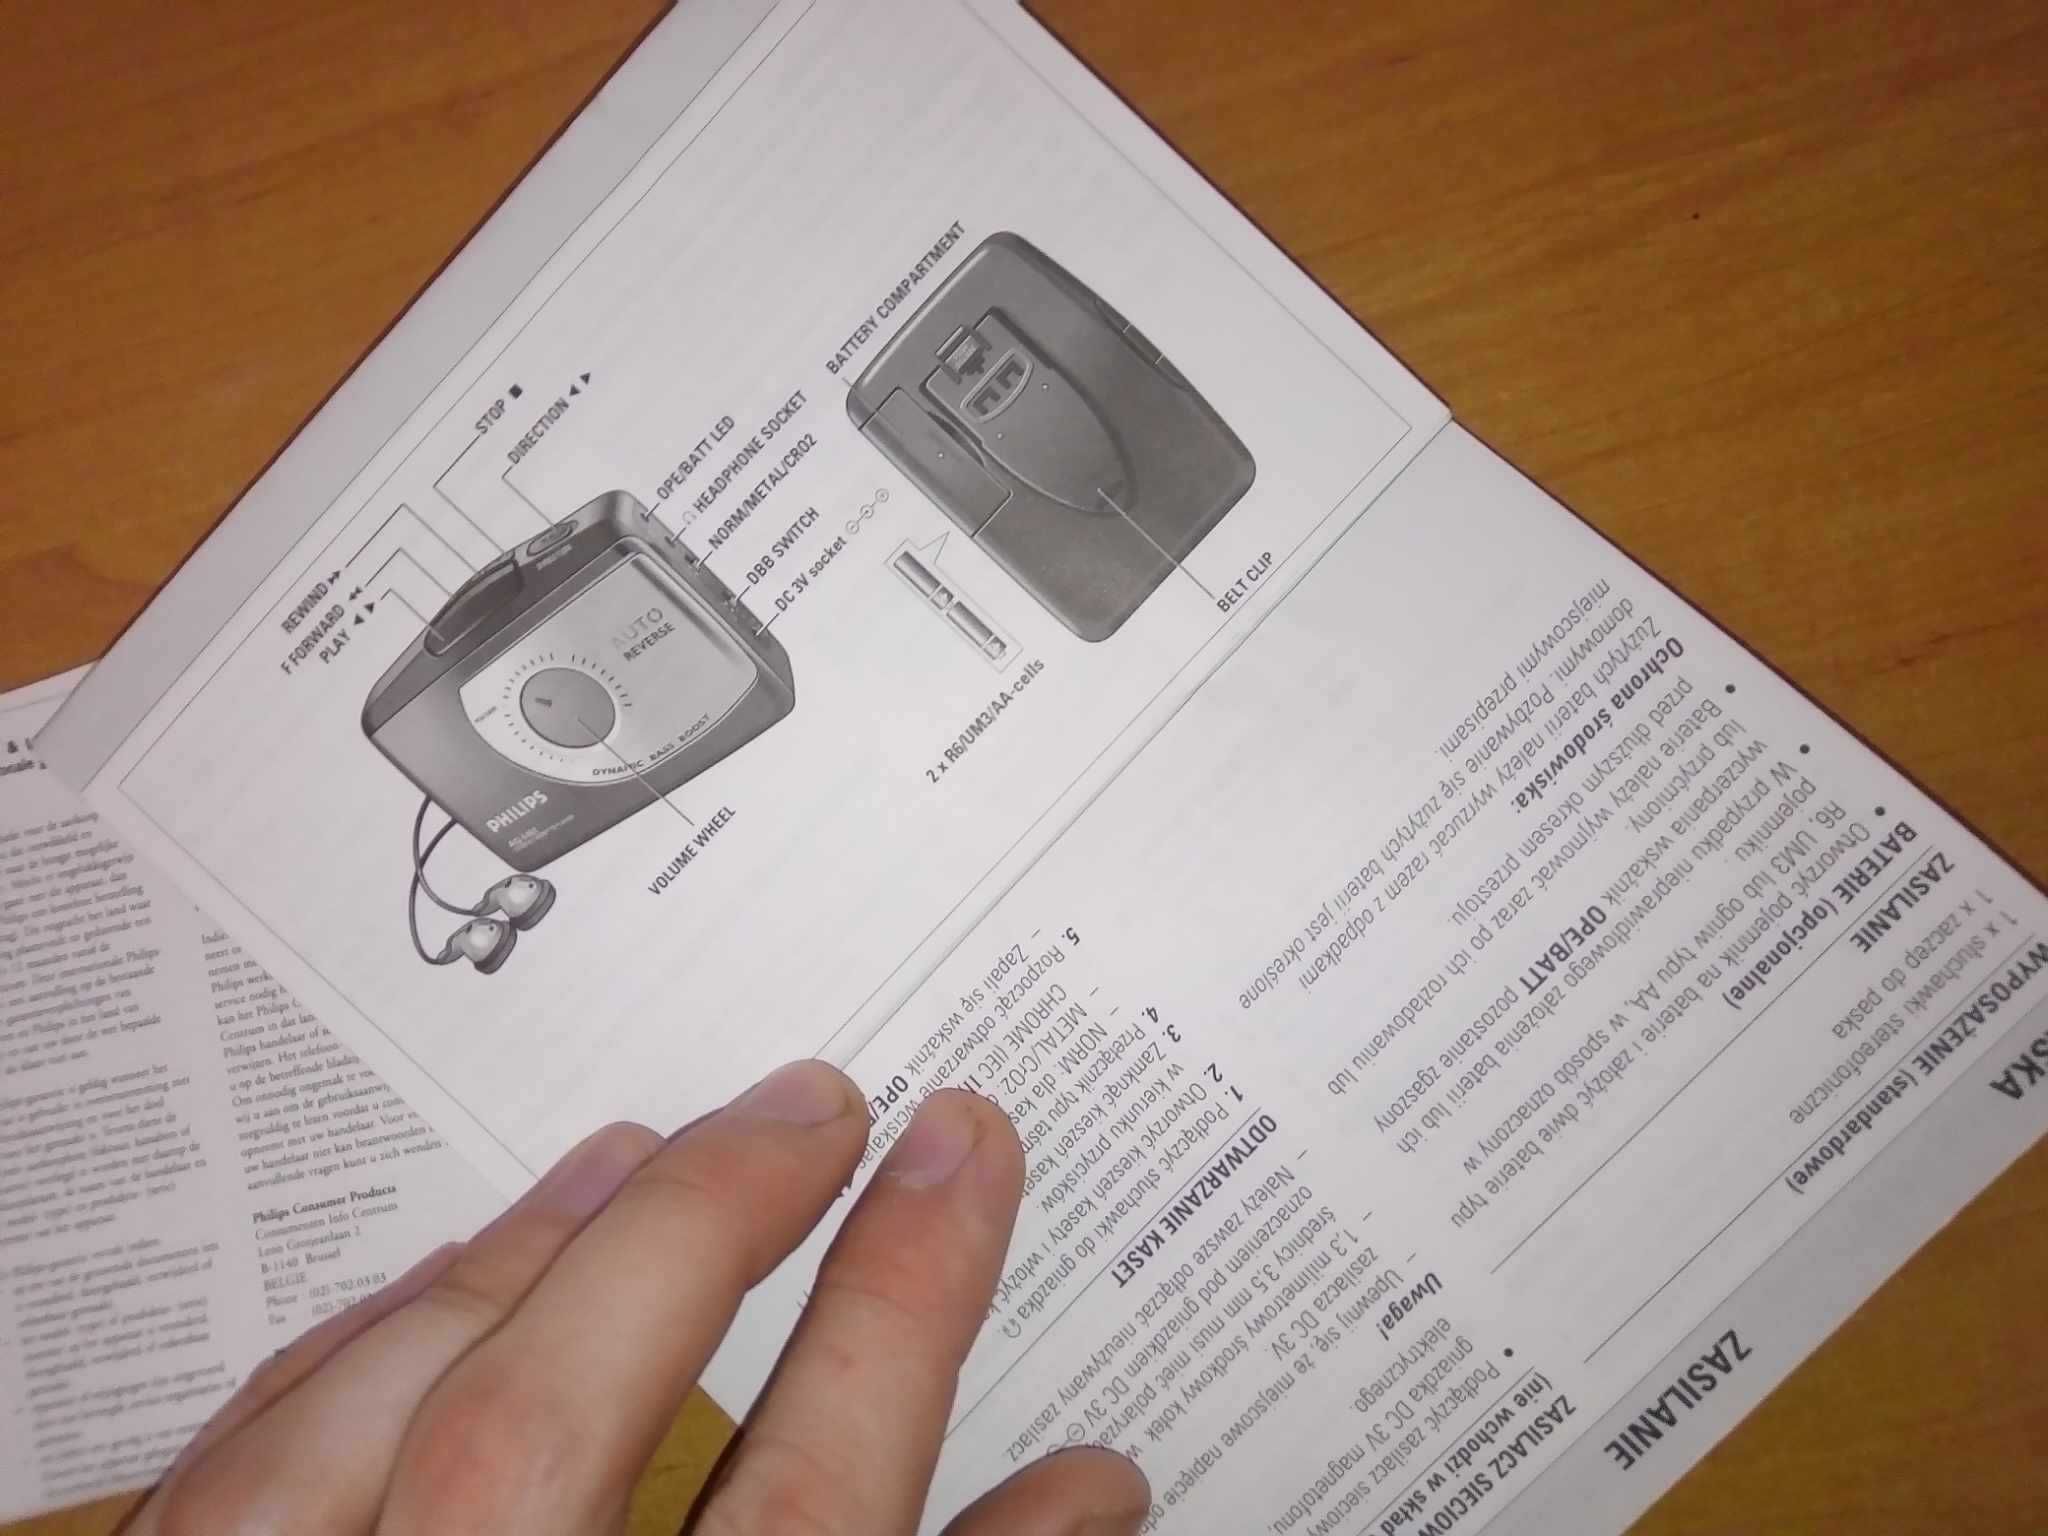 Walkman odtwarzacz kasetowy Philips Aq6487 instrukcja obsługi PRL